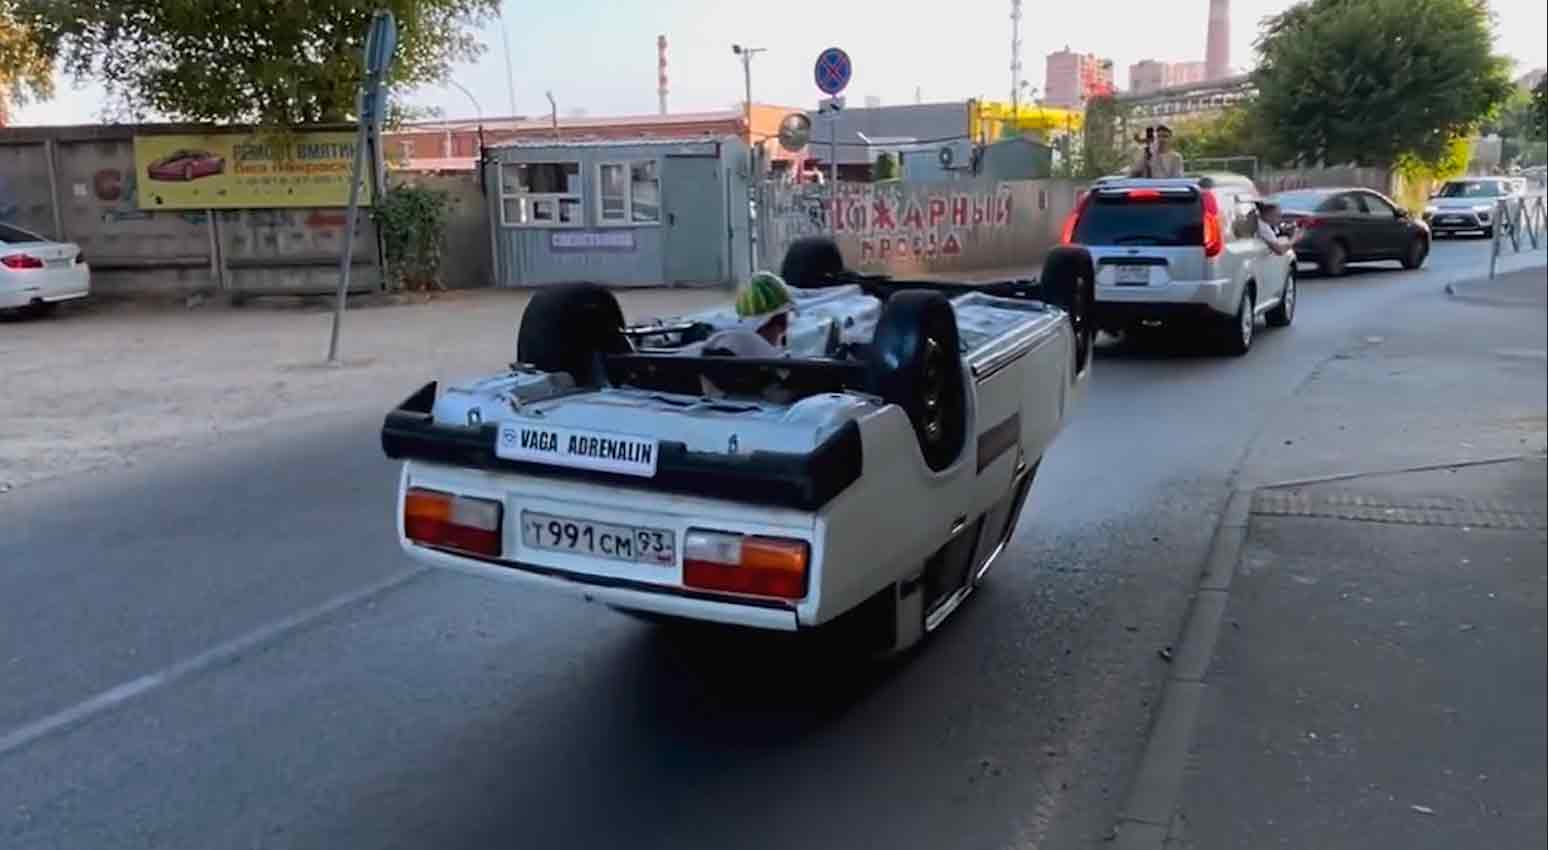 Russo dirige Lada de cabeça para baixo pelas ruas de Krasnodar. Fotos e vídeo: Instagram @vaga_adrenalin